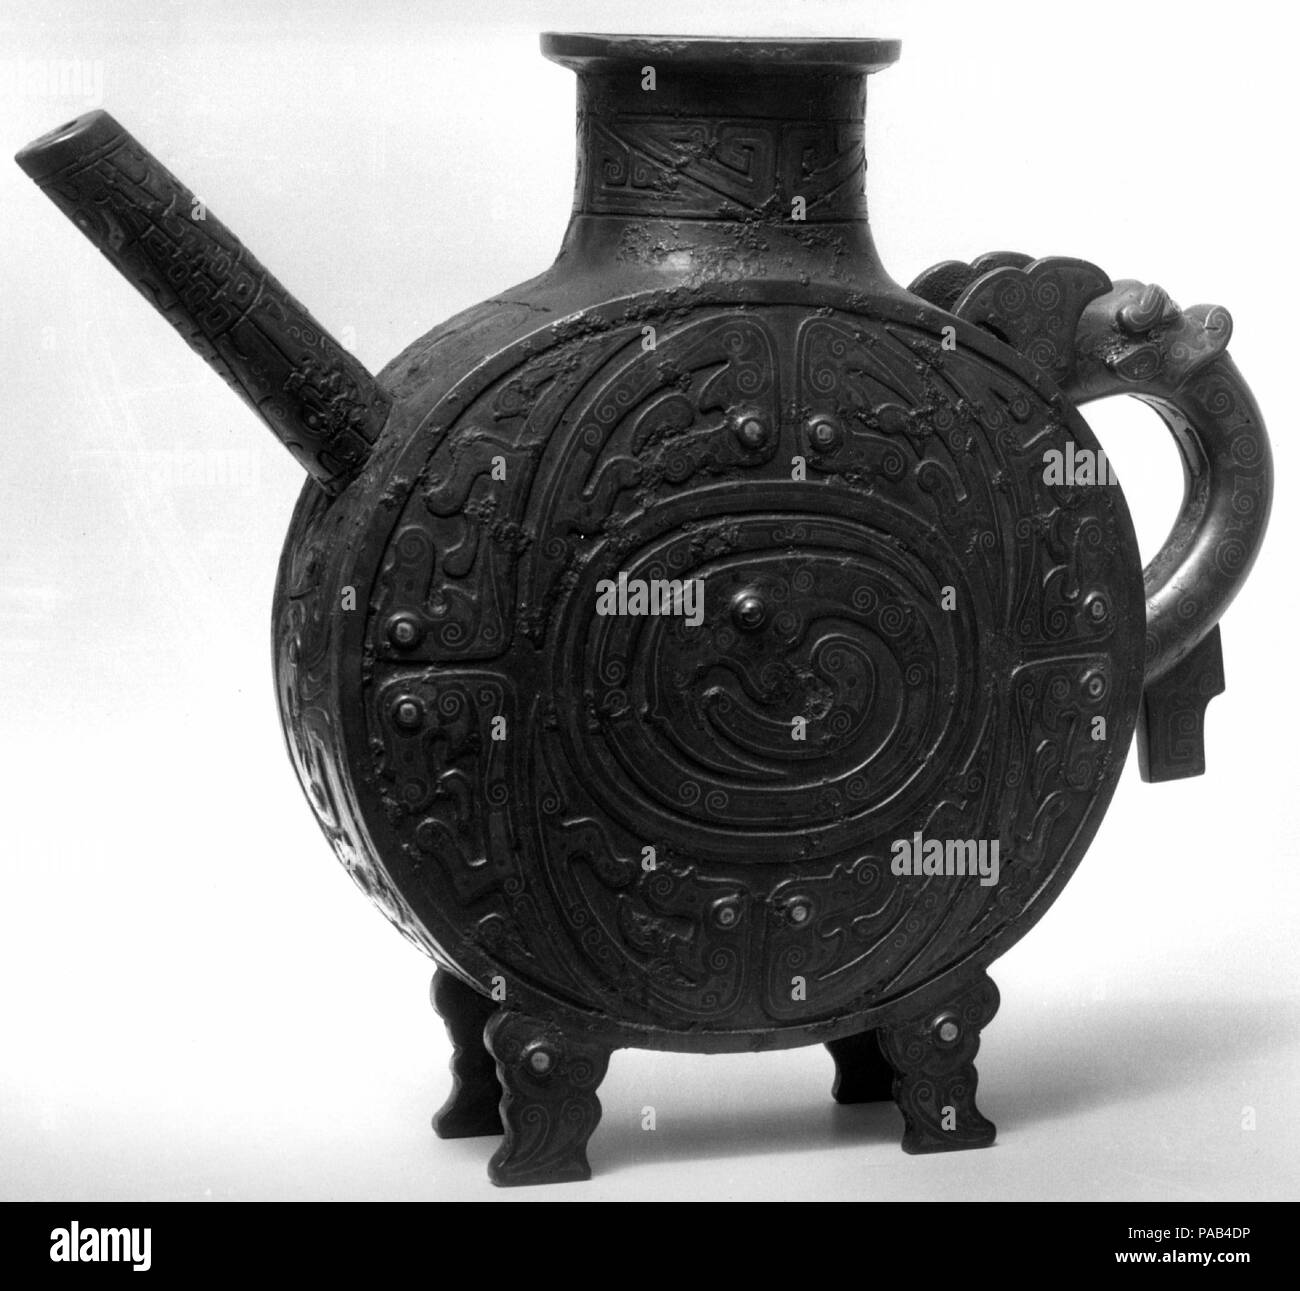 Ewer. Cultura: China. Dimensiones: H. 11 5/8 pulg. (29,5 cm); W. 14 1/4 pulg. (36,2 cm). Museo: Museo Metropolitano de Arte, Nueva York, Estados Unidos. Foto de stock